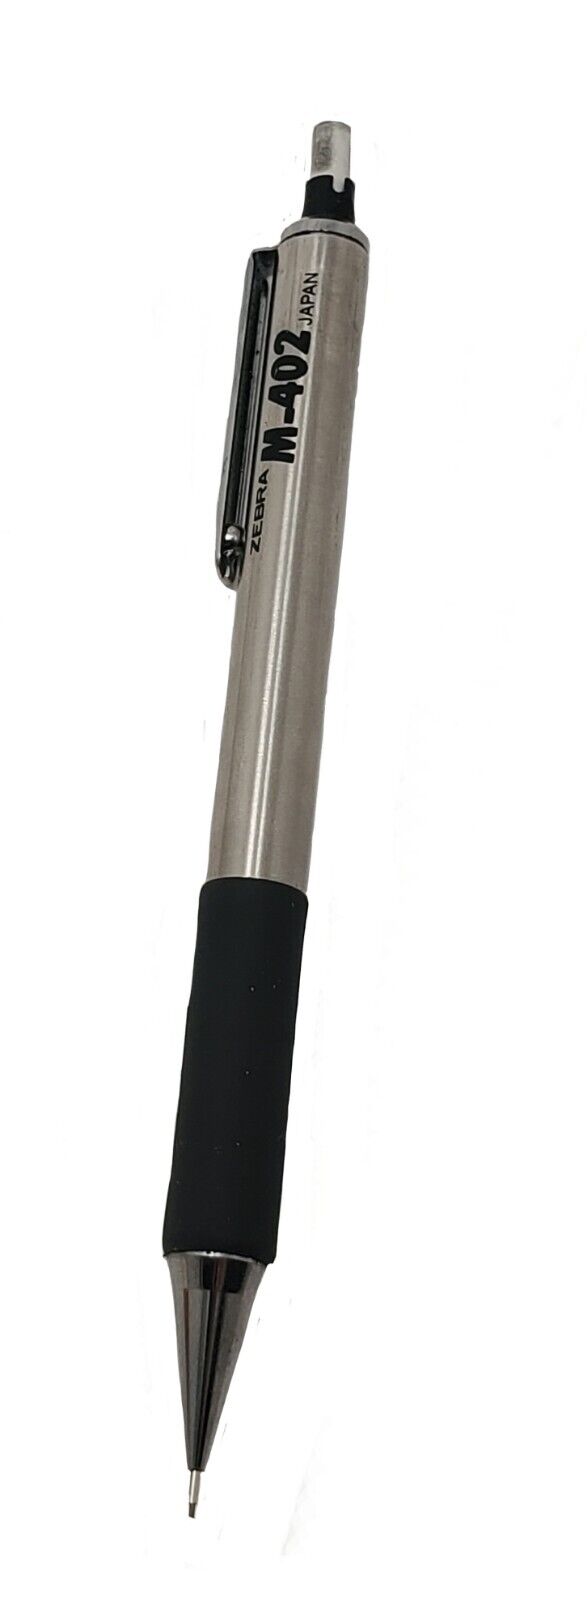 Vintage Zebra M-402 Metal Mechanical Pencil Made In Japan / 0.5mm Lead